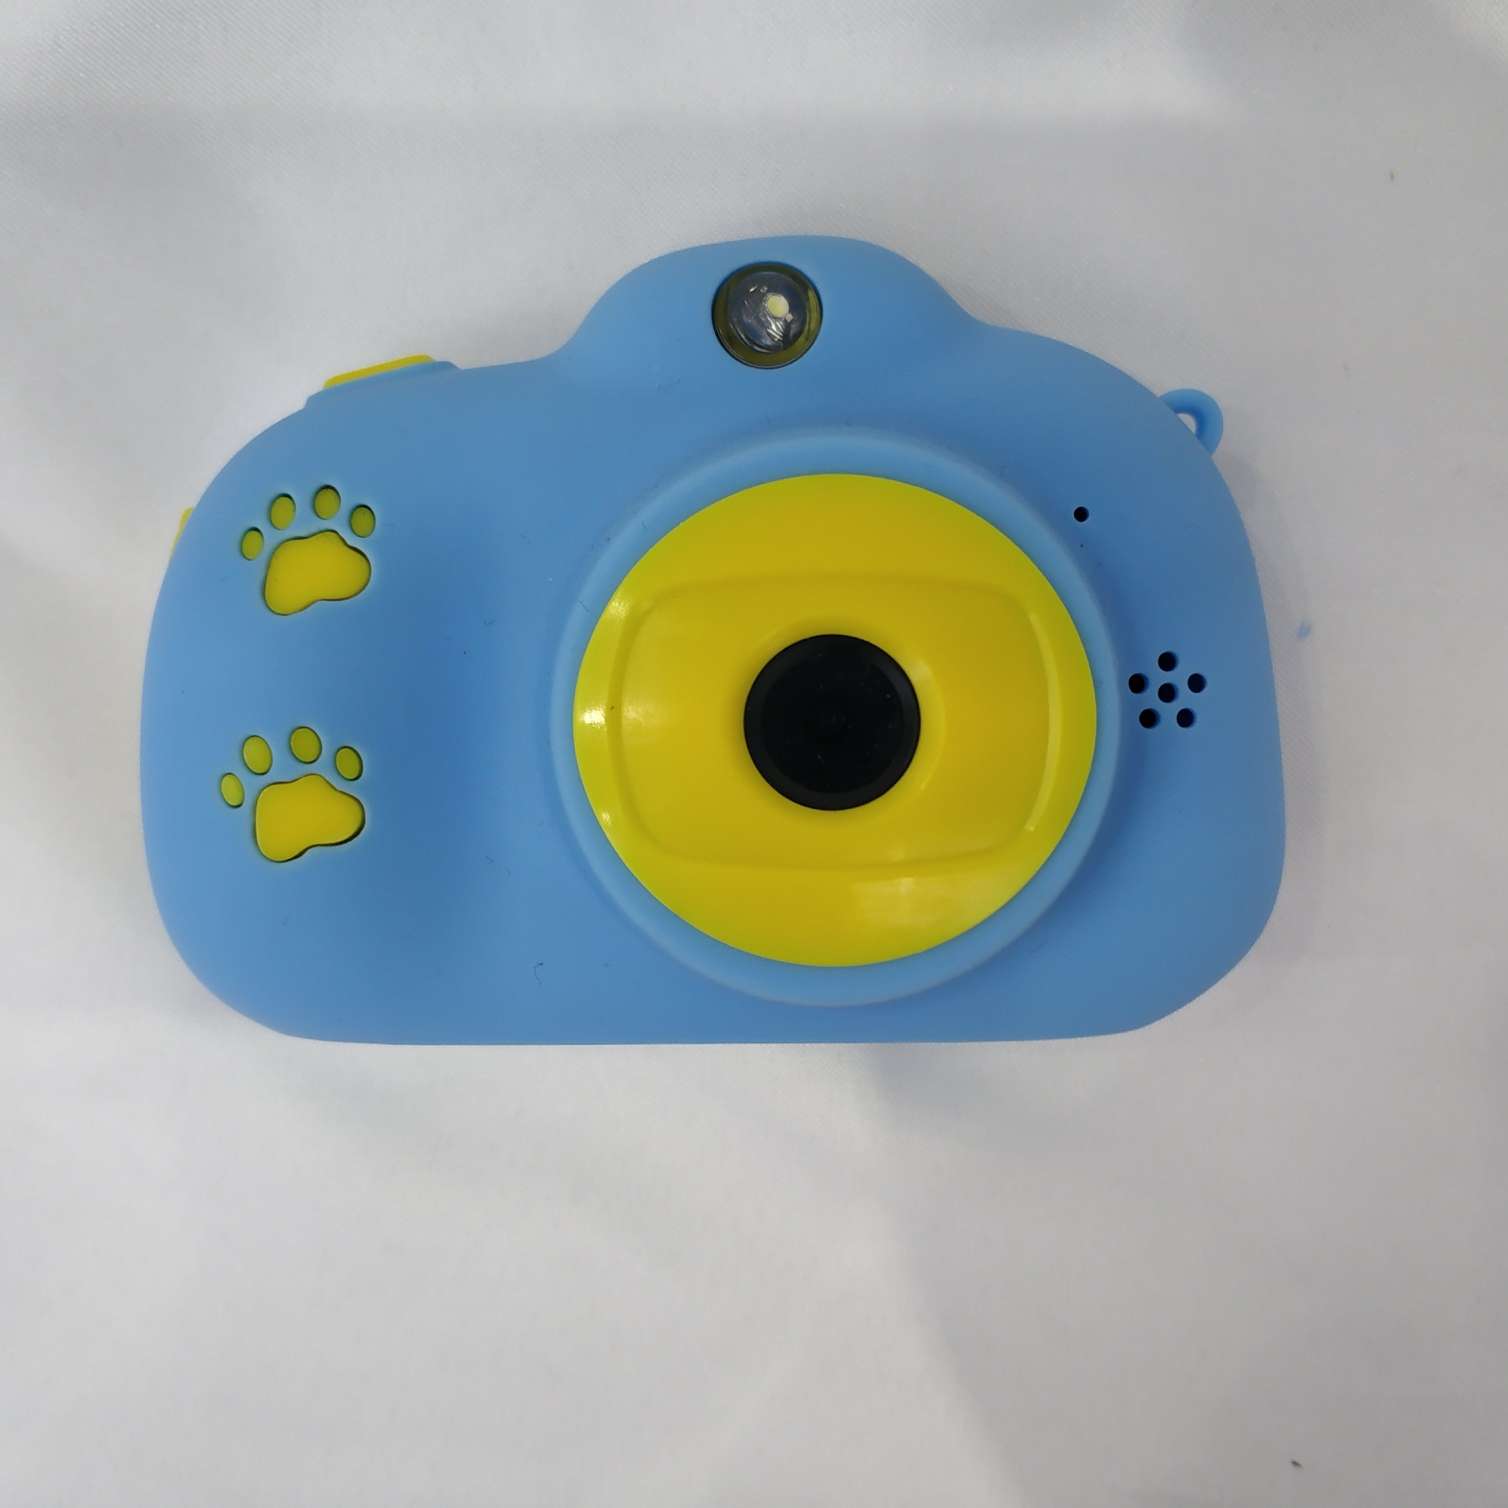 易创—04儿童数码相机小兔子宝宝拍照玩具礼物产品图